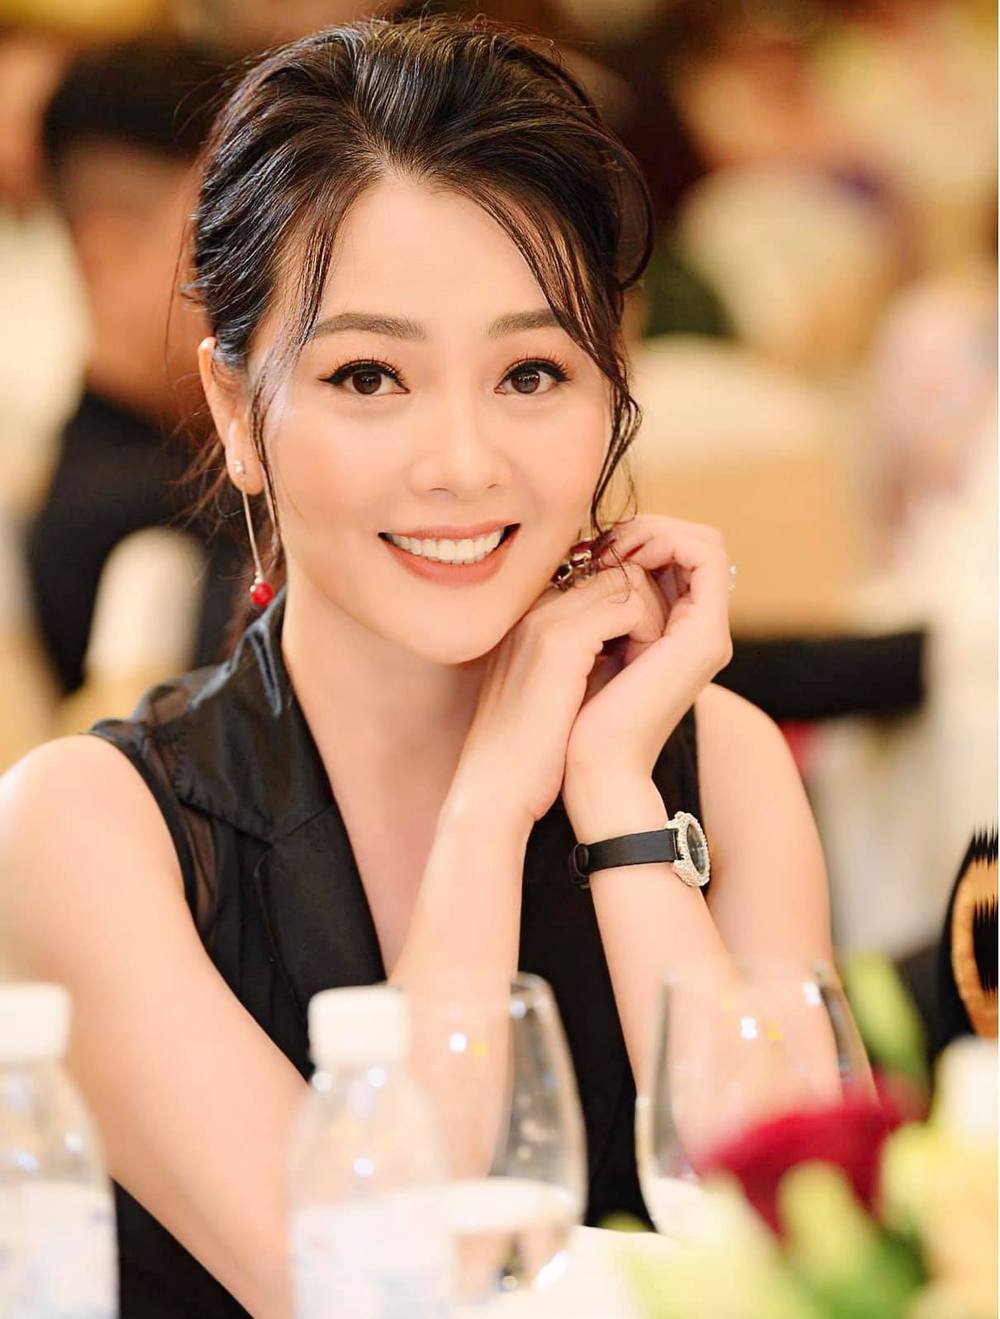 Hoa hậu Quý bà Hoàng Yến sau 13 năm đăng quang: Cuộc sống sung túc, U50 như gái đôi mươi - ảnh 4